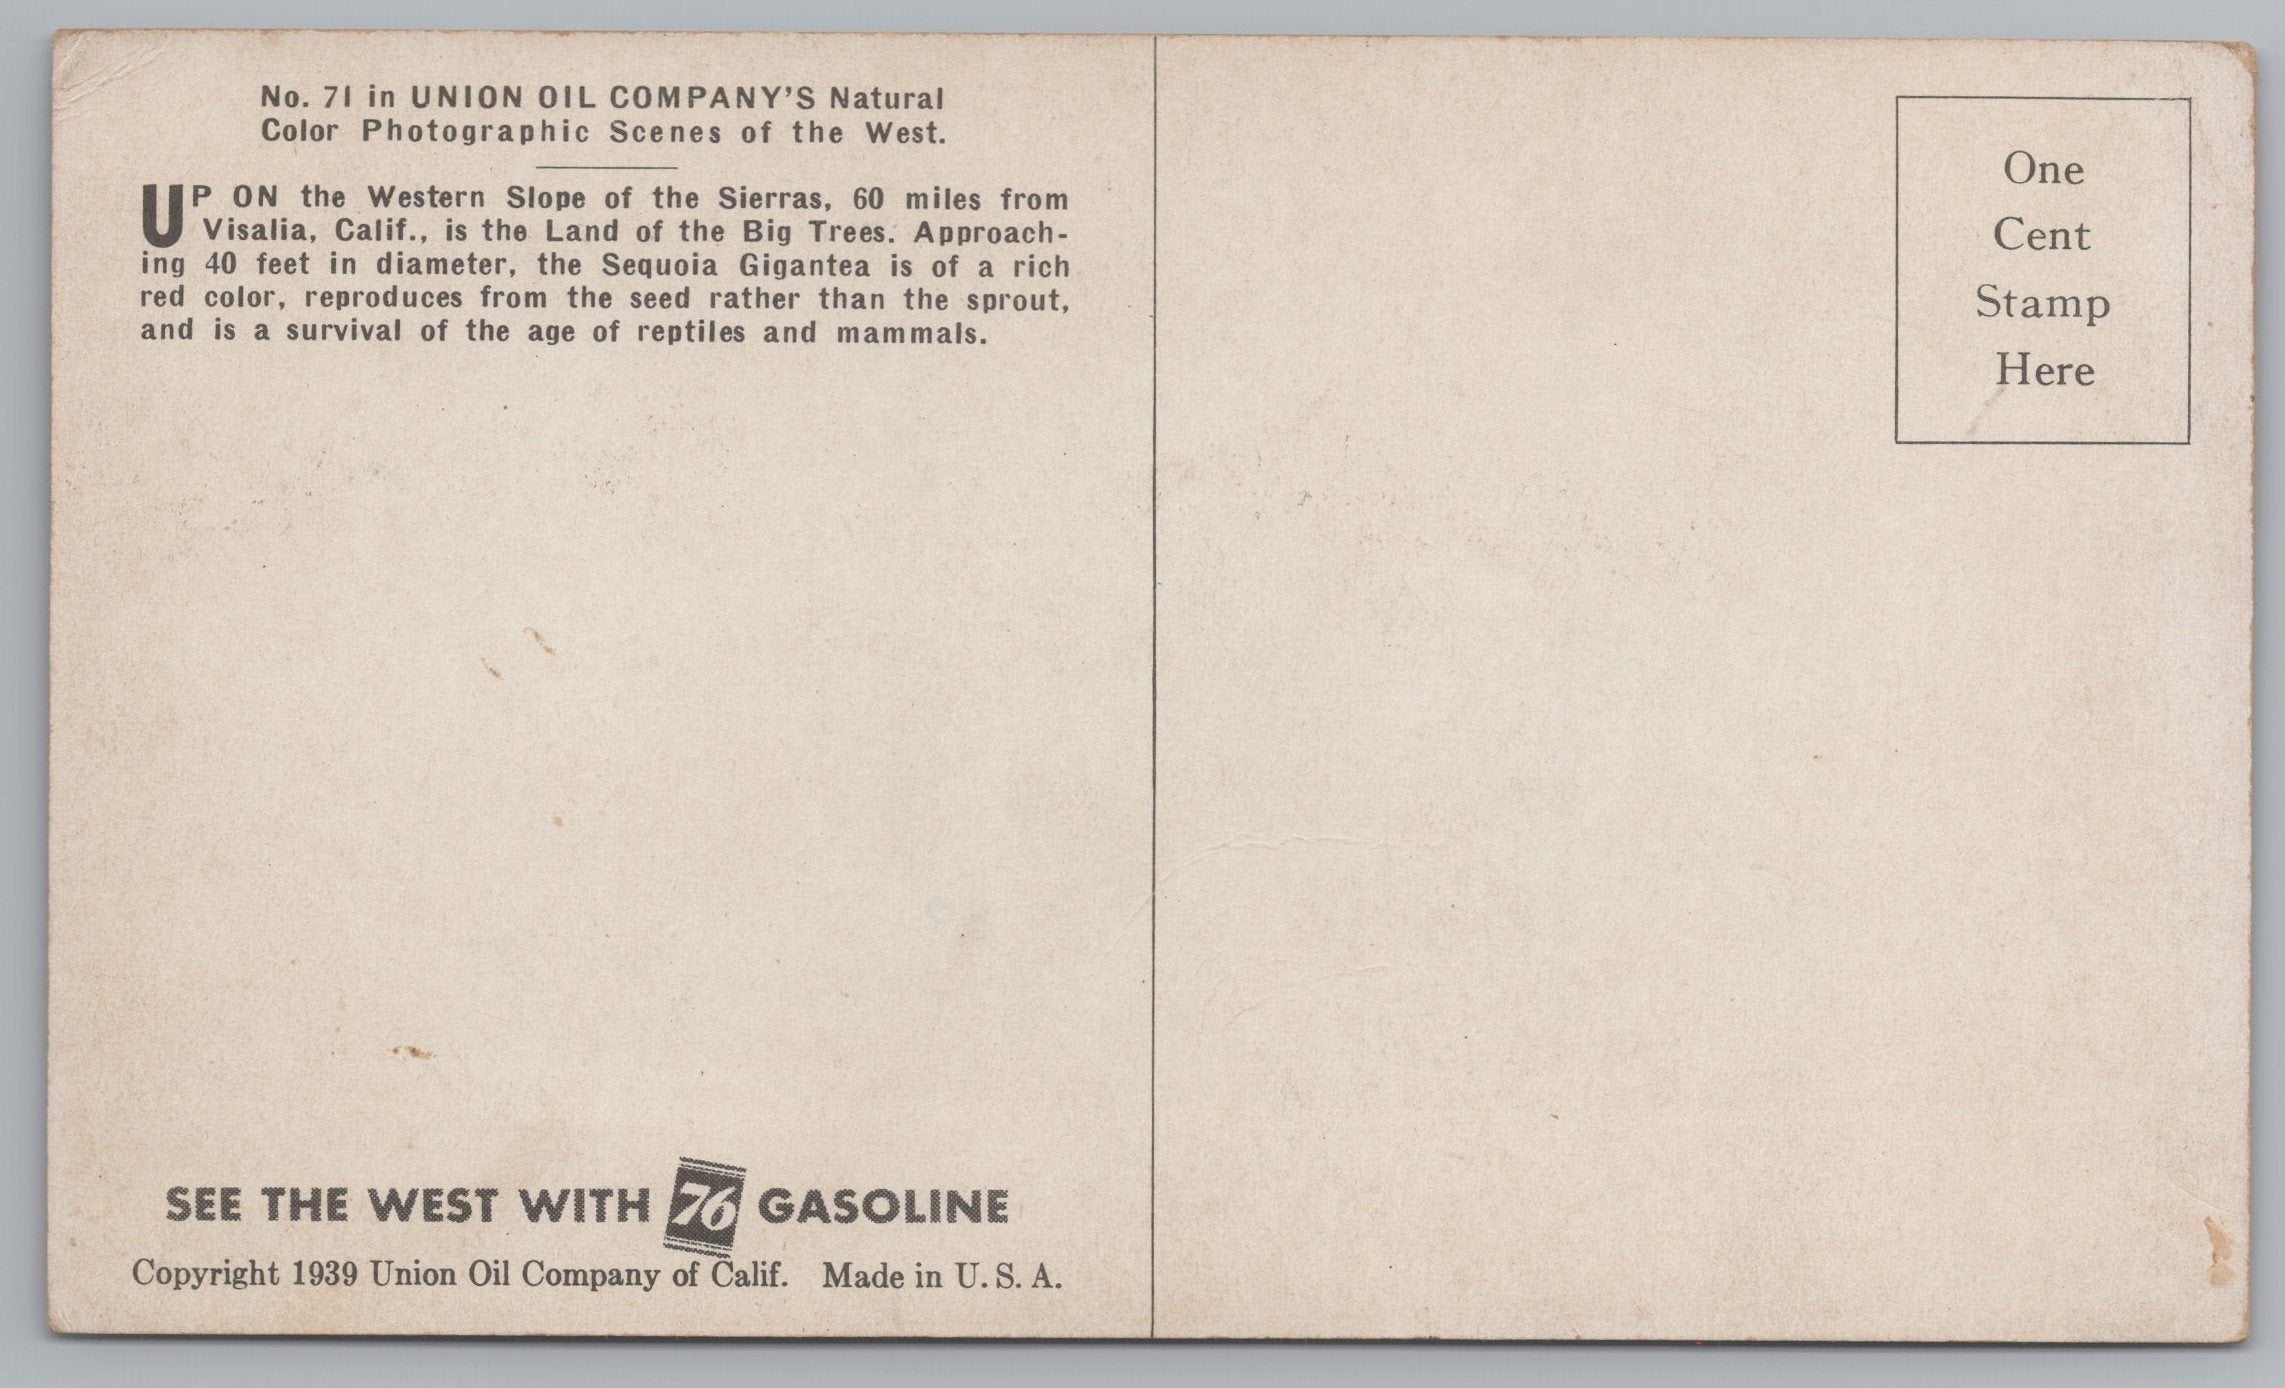 The Sequoia Gigantea, 40 Feet In Diameter, 60 Miles From Visalia, California, Vintage Post Card.